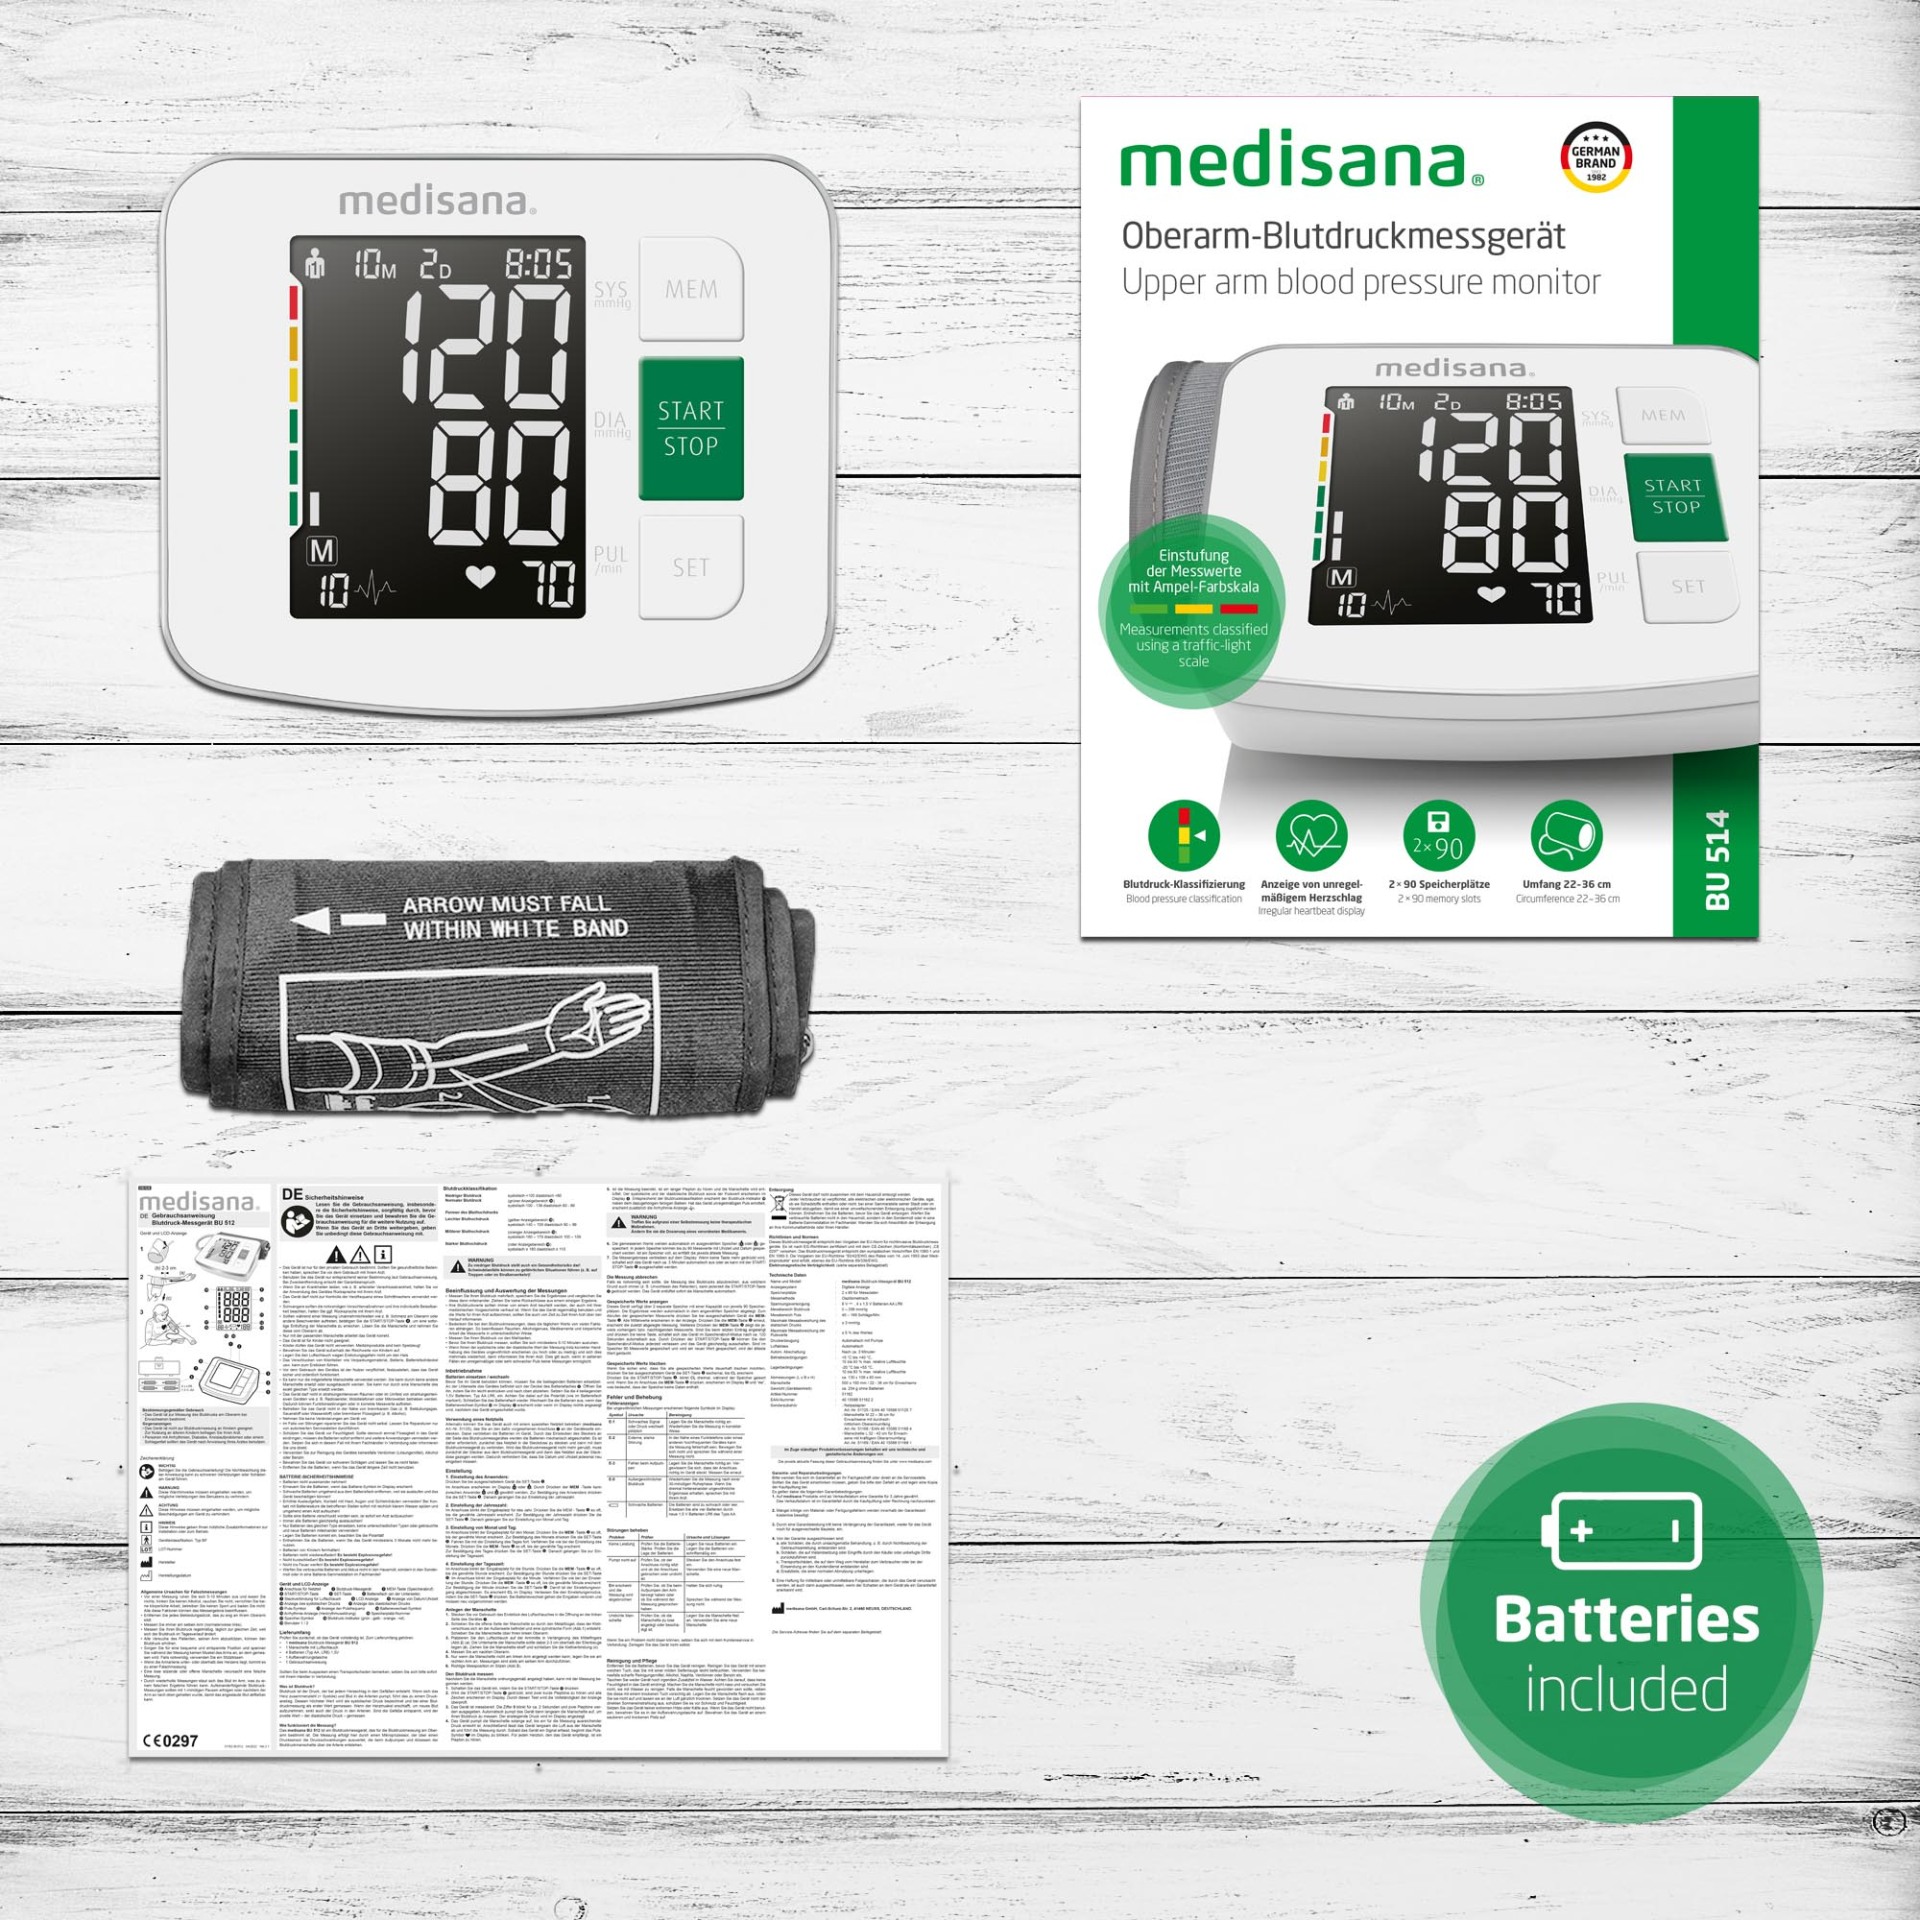  خرید فشار سنج دیجیتال مدیسانا (Medisana) مدل BU 514 